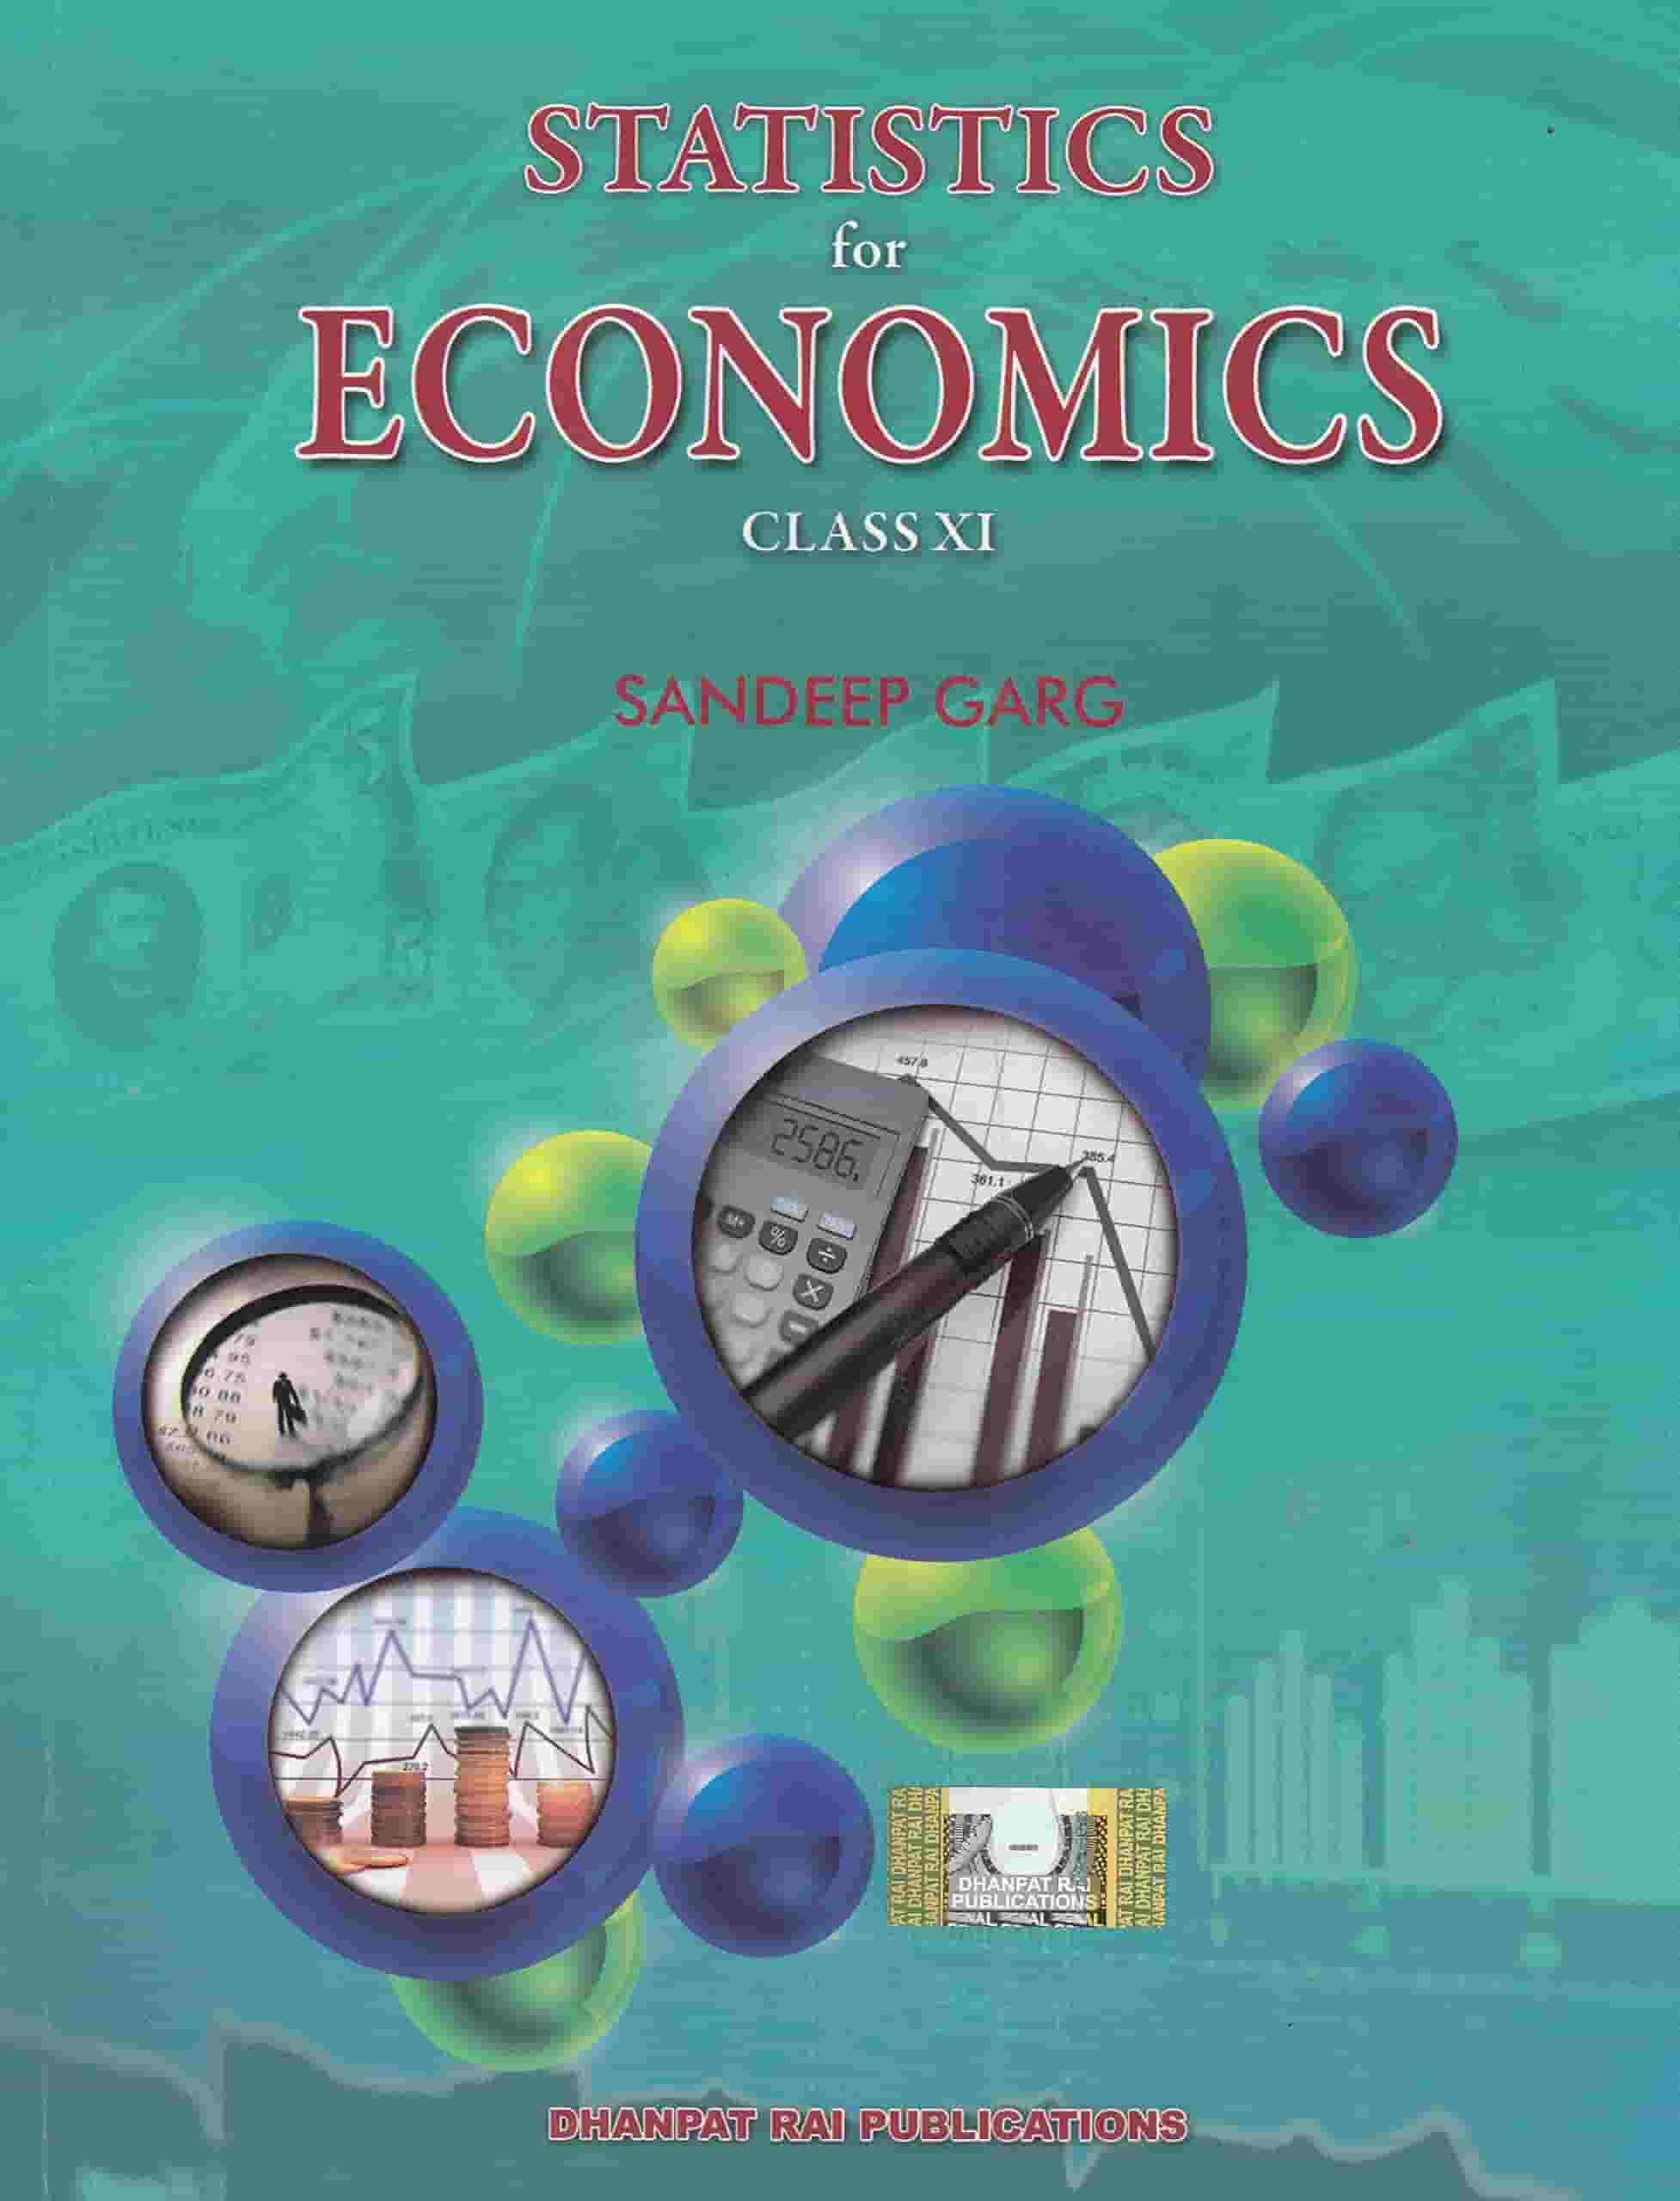 Dhanpat Indian Economics for Statistics Sandeep Garg Class XI